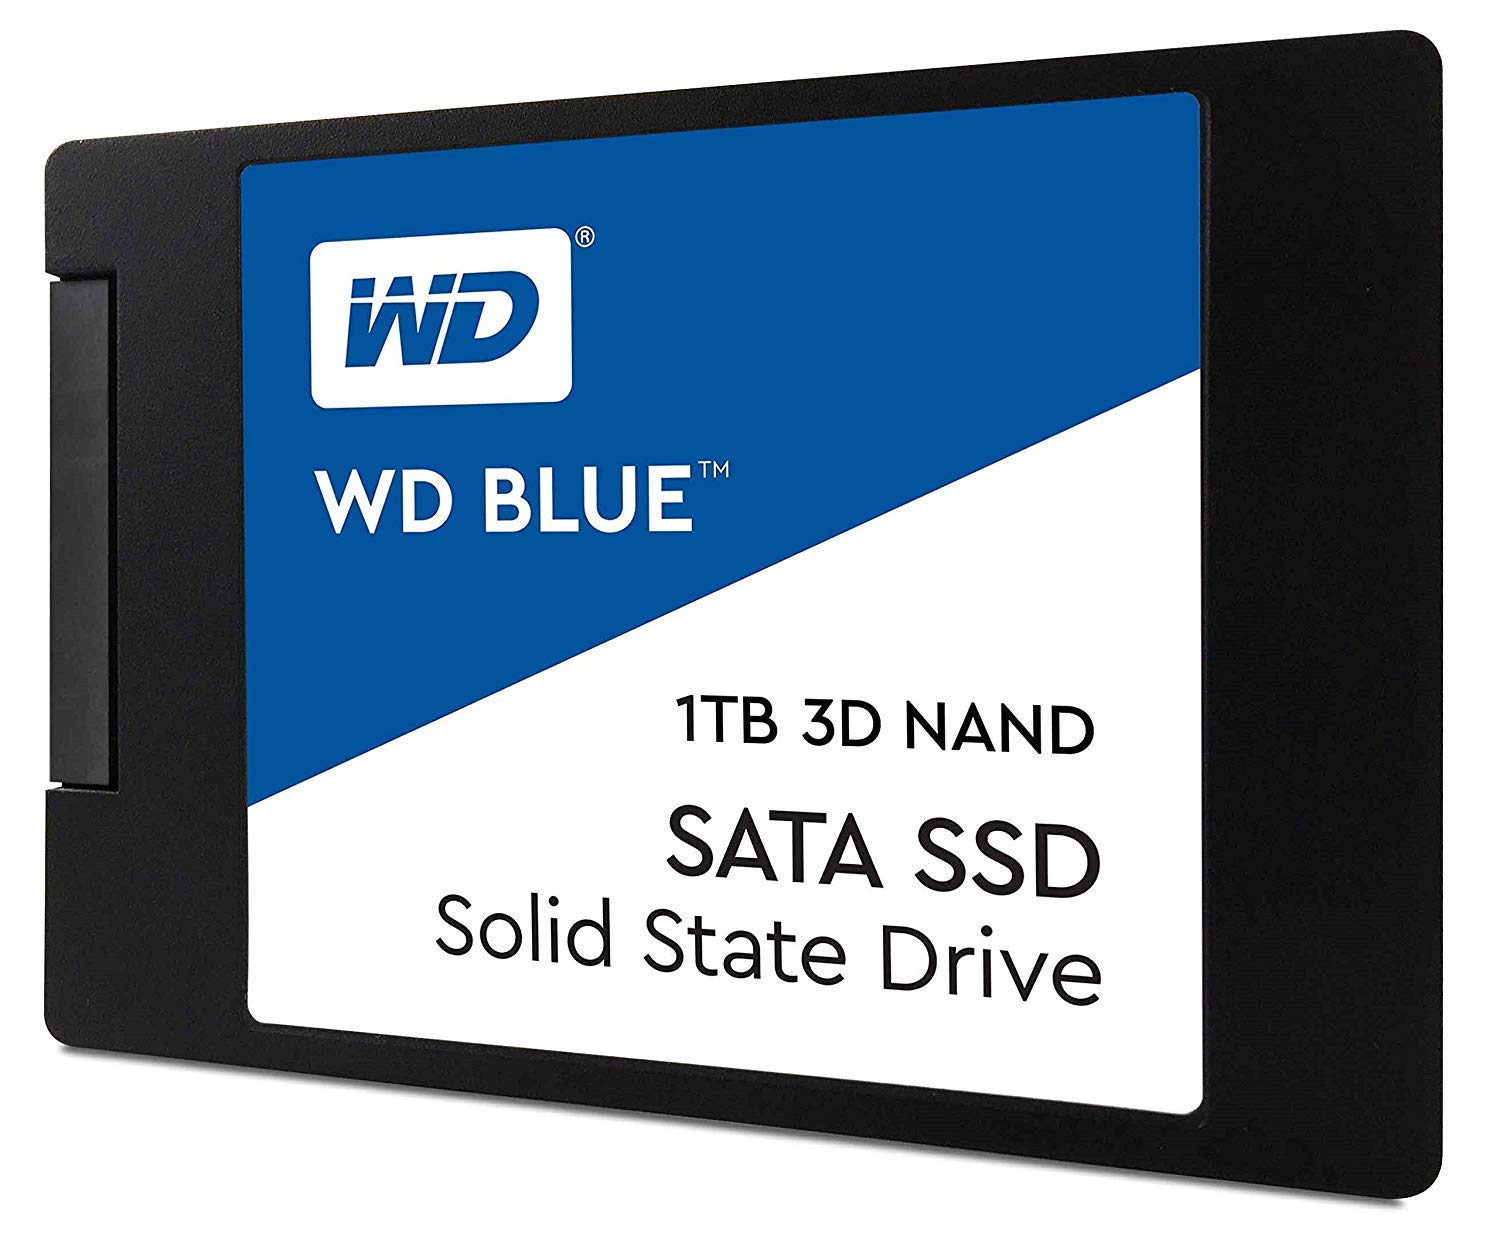 Disco SSD WD 1TB 3D NAND solo 137,9€